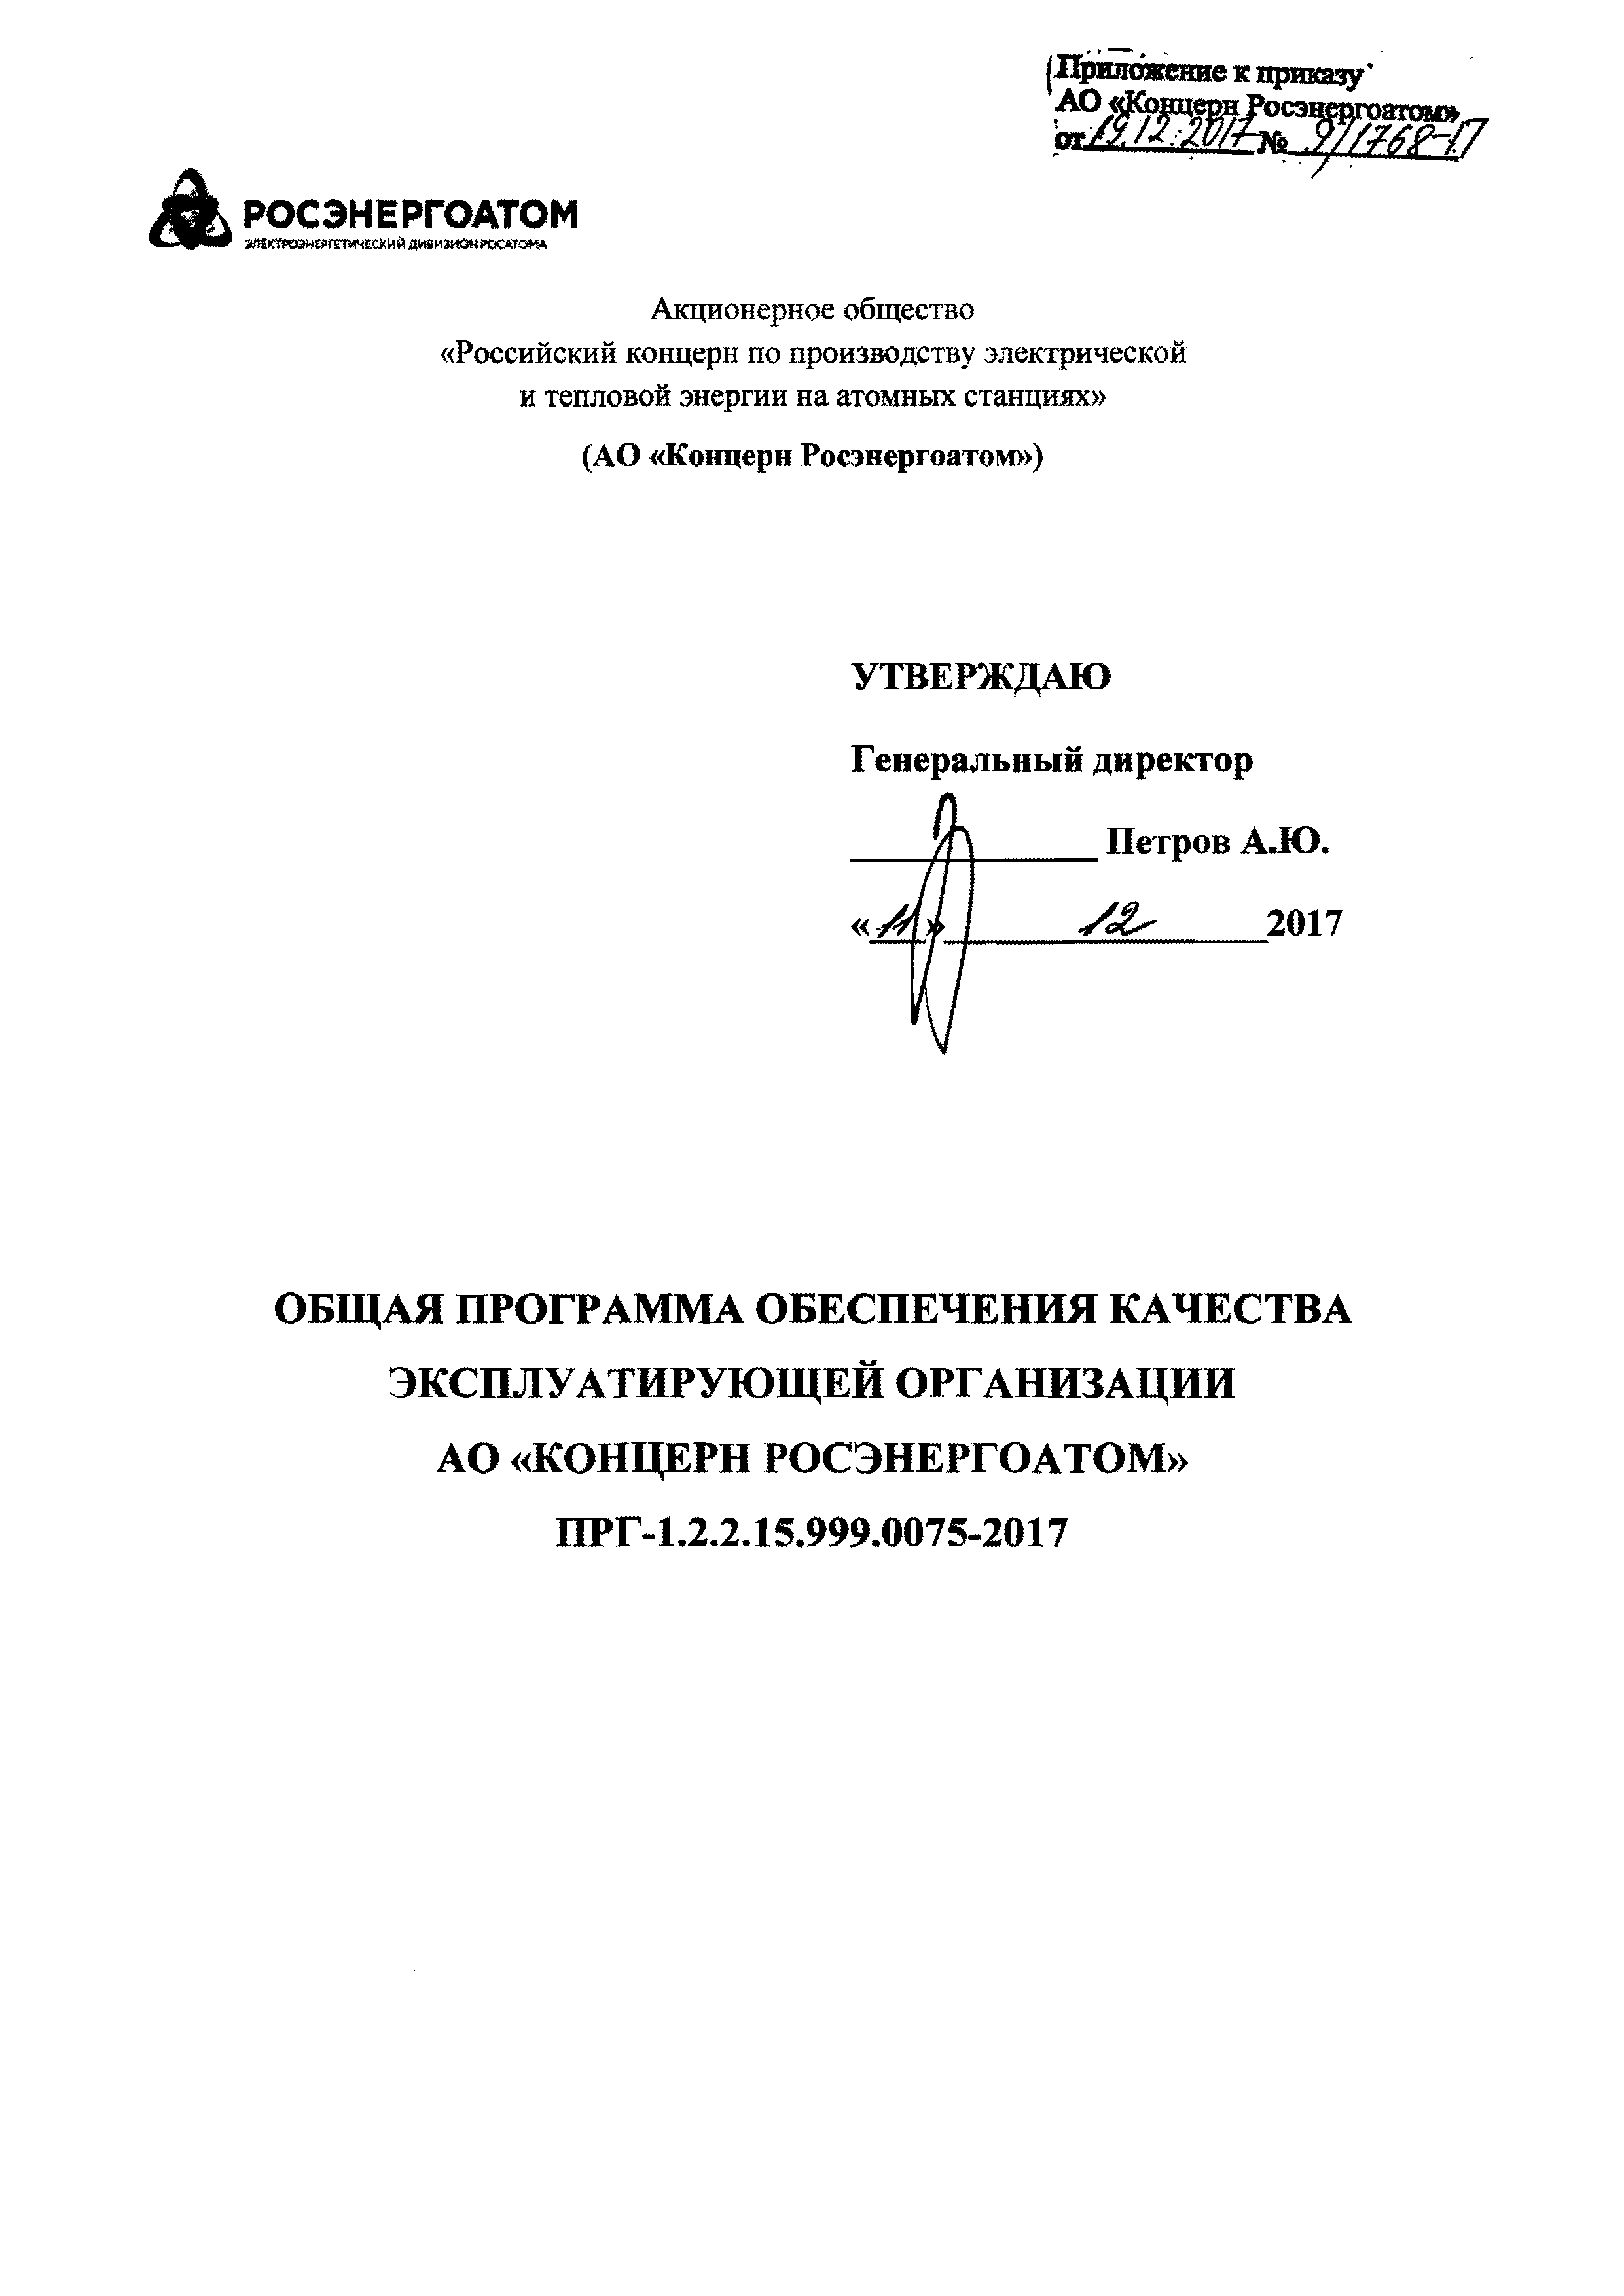 ПРГ 1.2.2.15.999.0075-2017